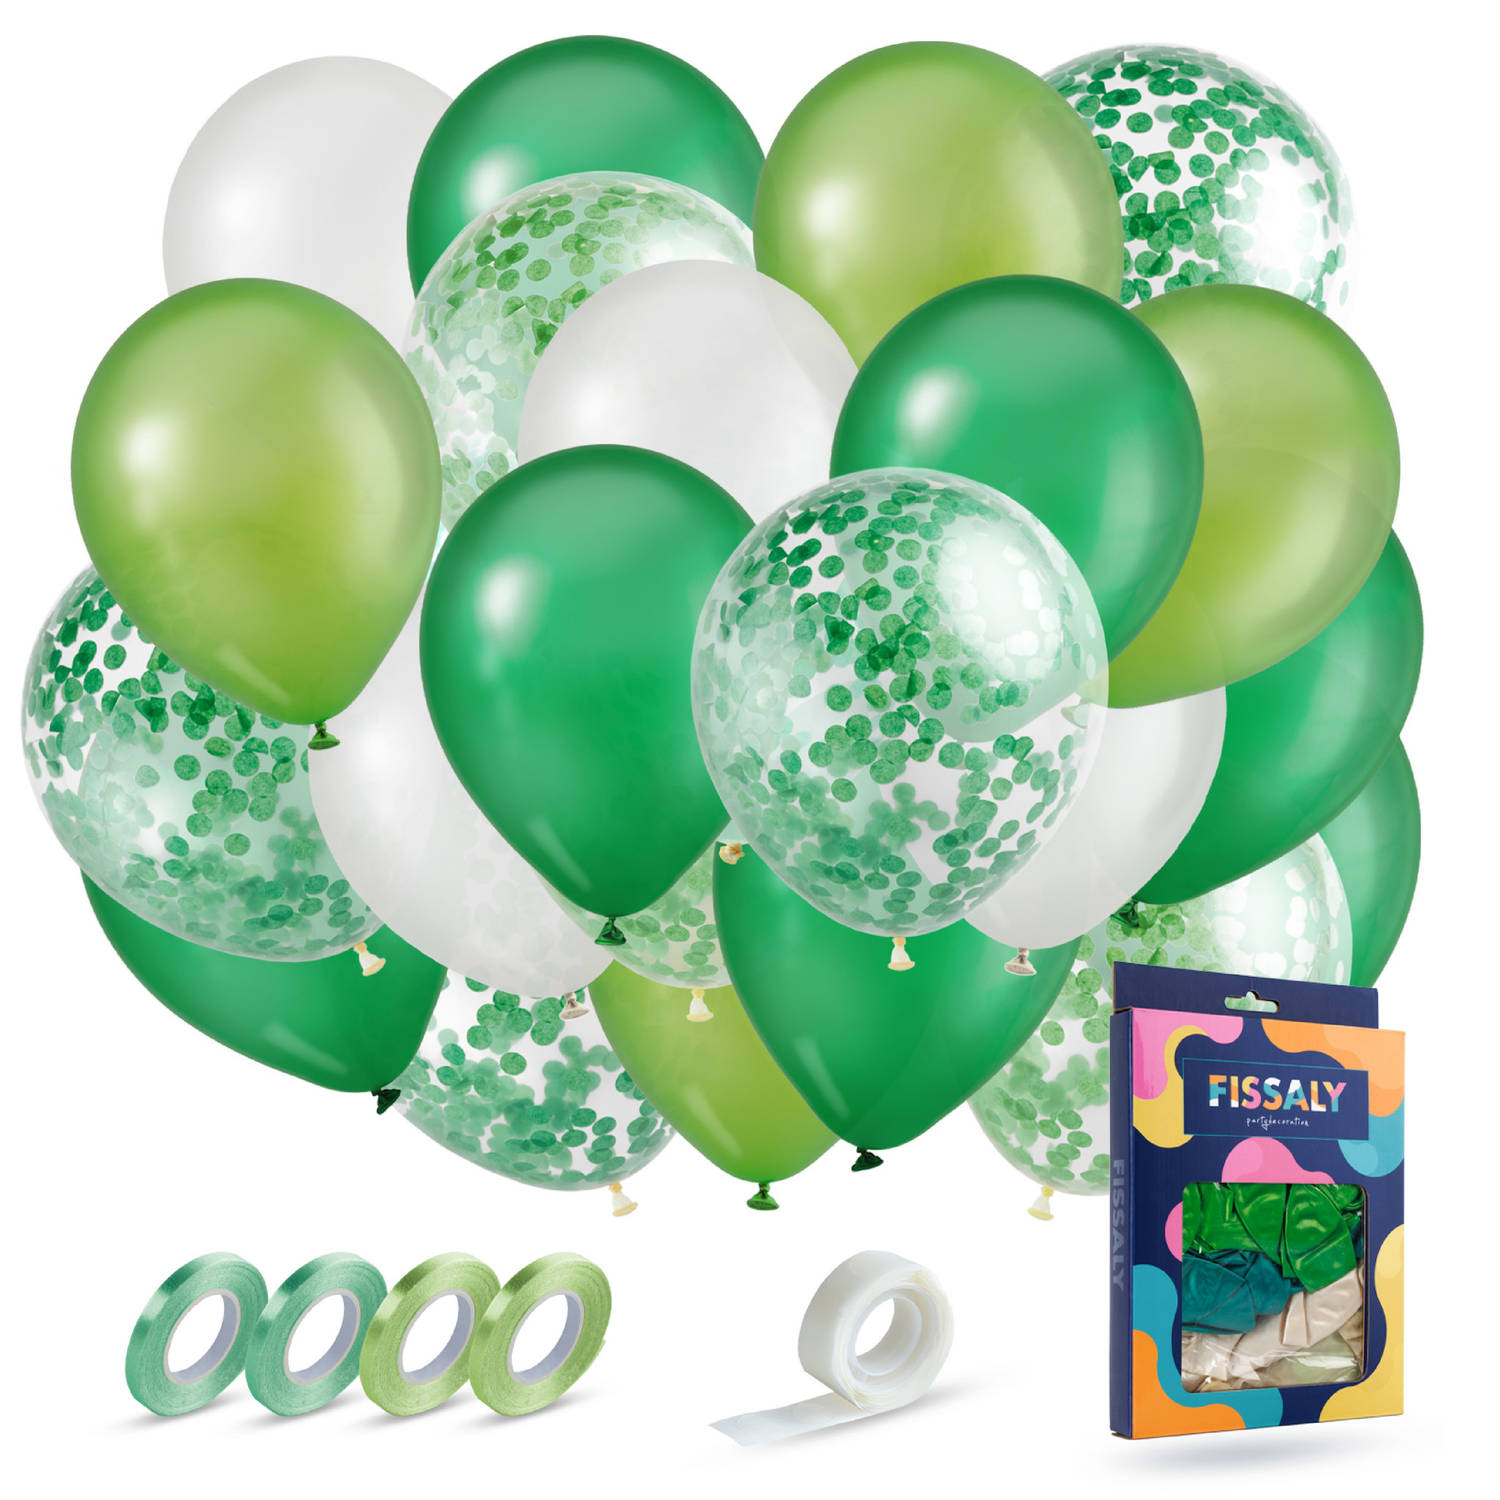 Fissaly® 40 stuks Groen, Wit & Donkergroen Helium Ballonnen met Lint - Versiering Decoratie - Papieren Confetti - Latex